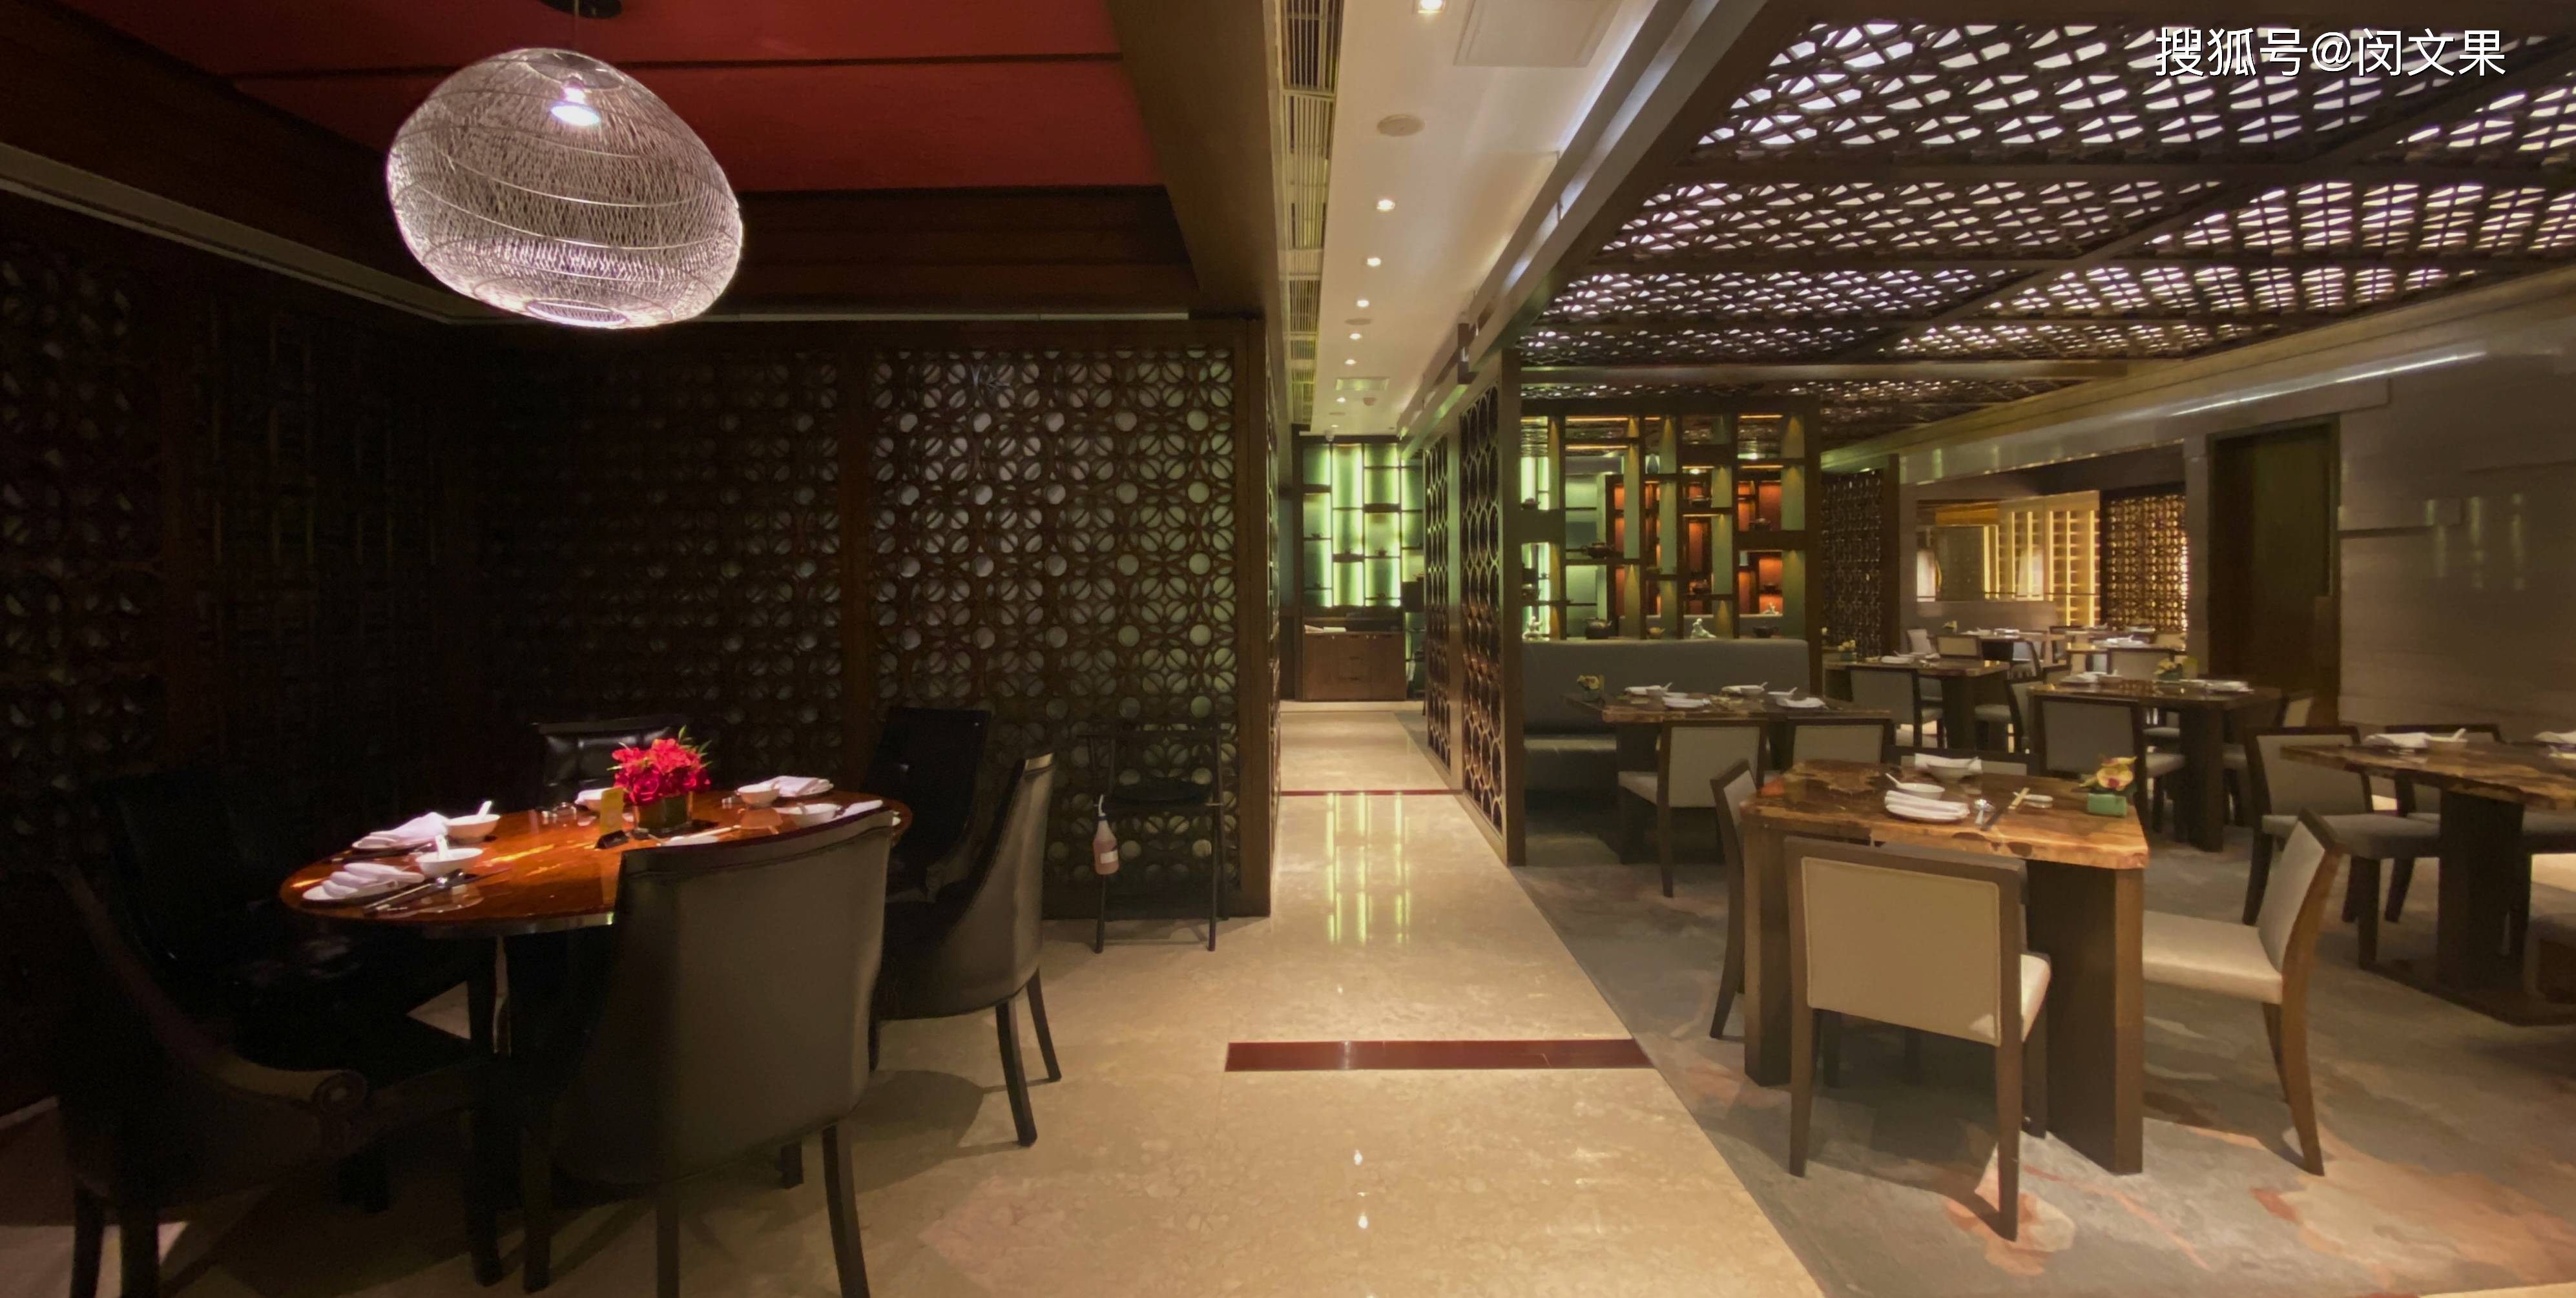 食在深圳jw万豪酒店,中餐厅"万豪中餐厅"是主选餐厅,其在11月迎来了